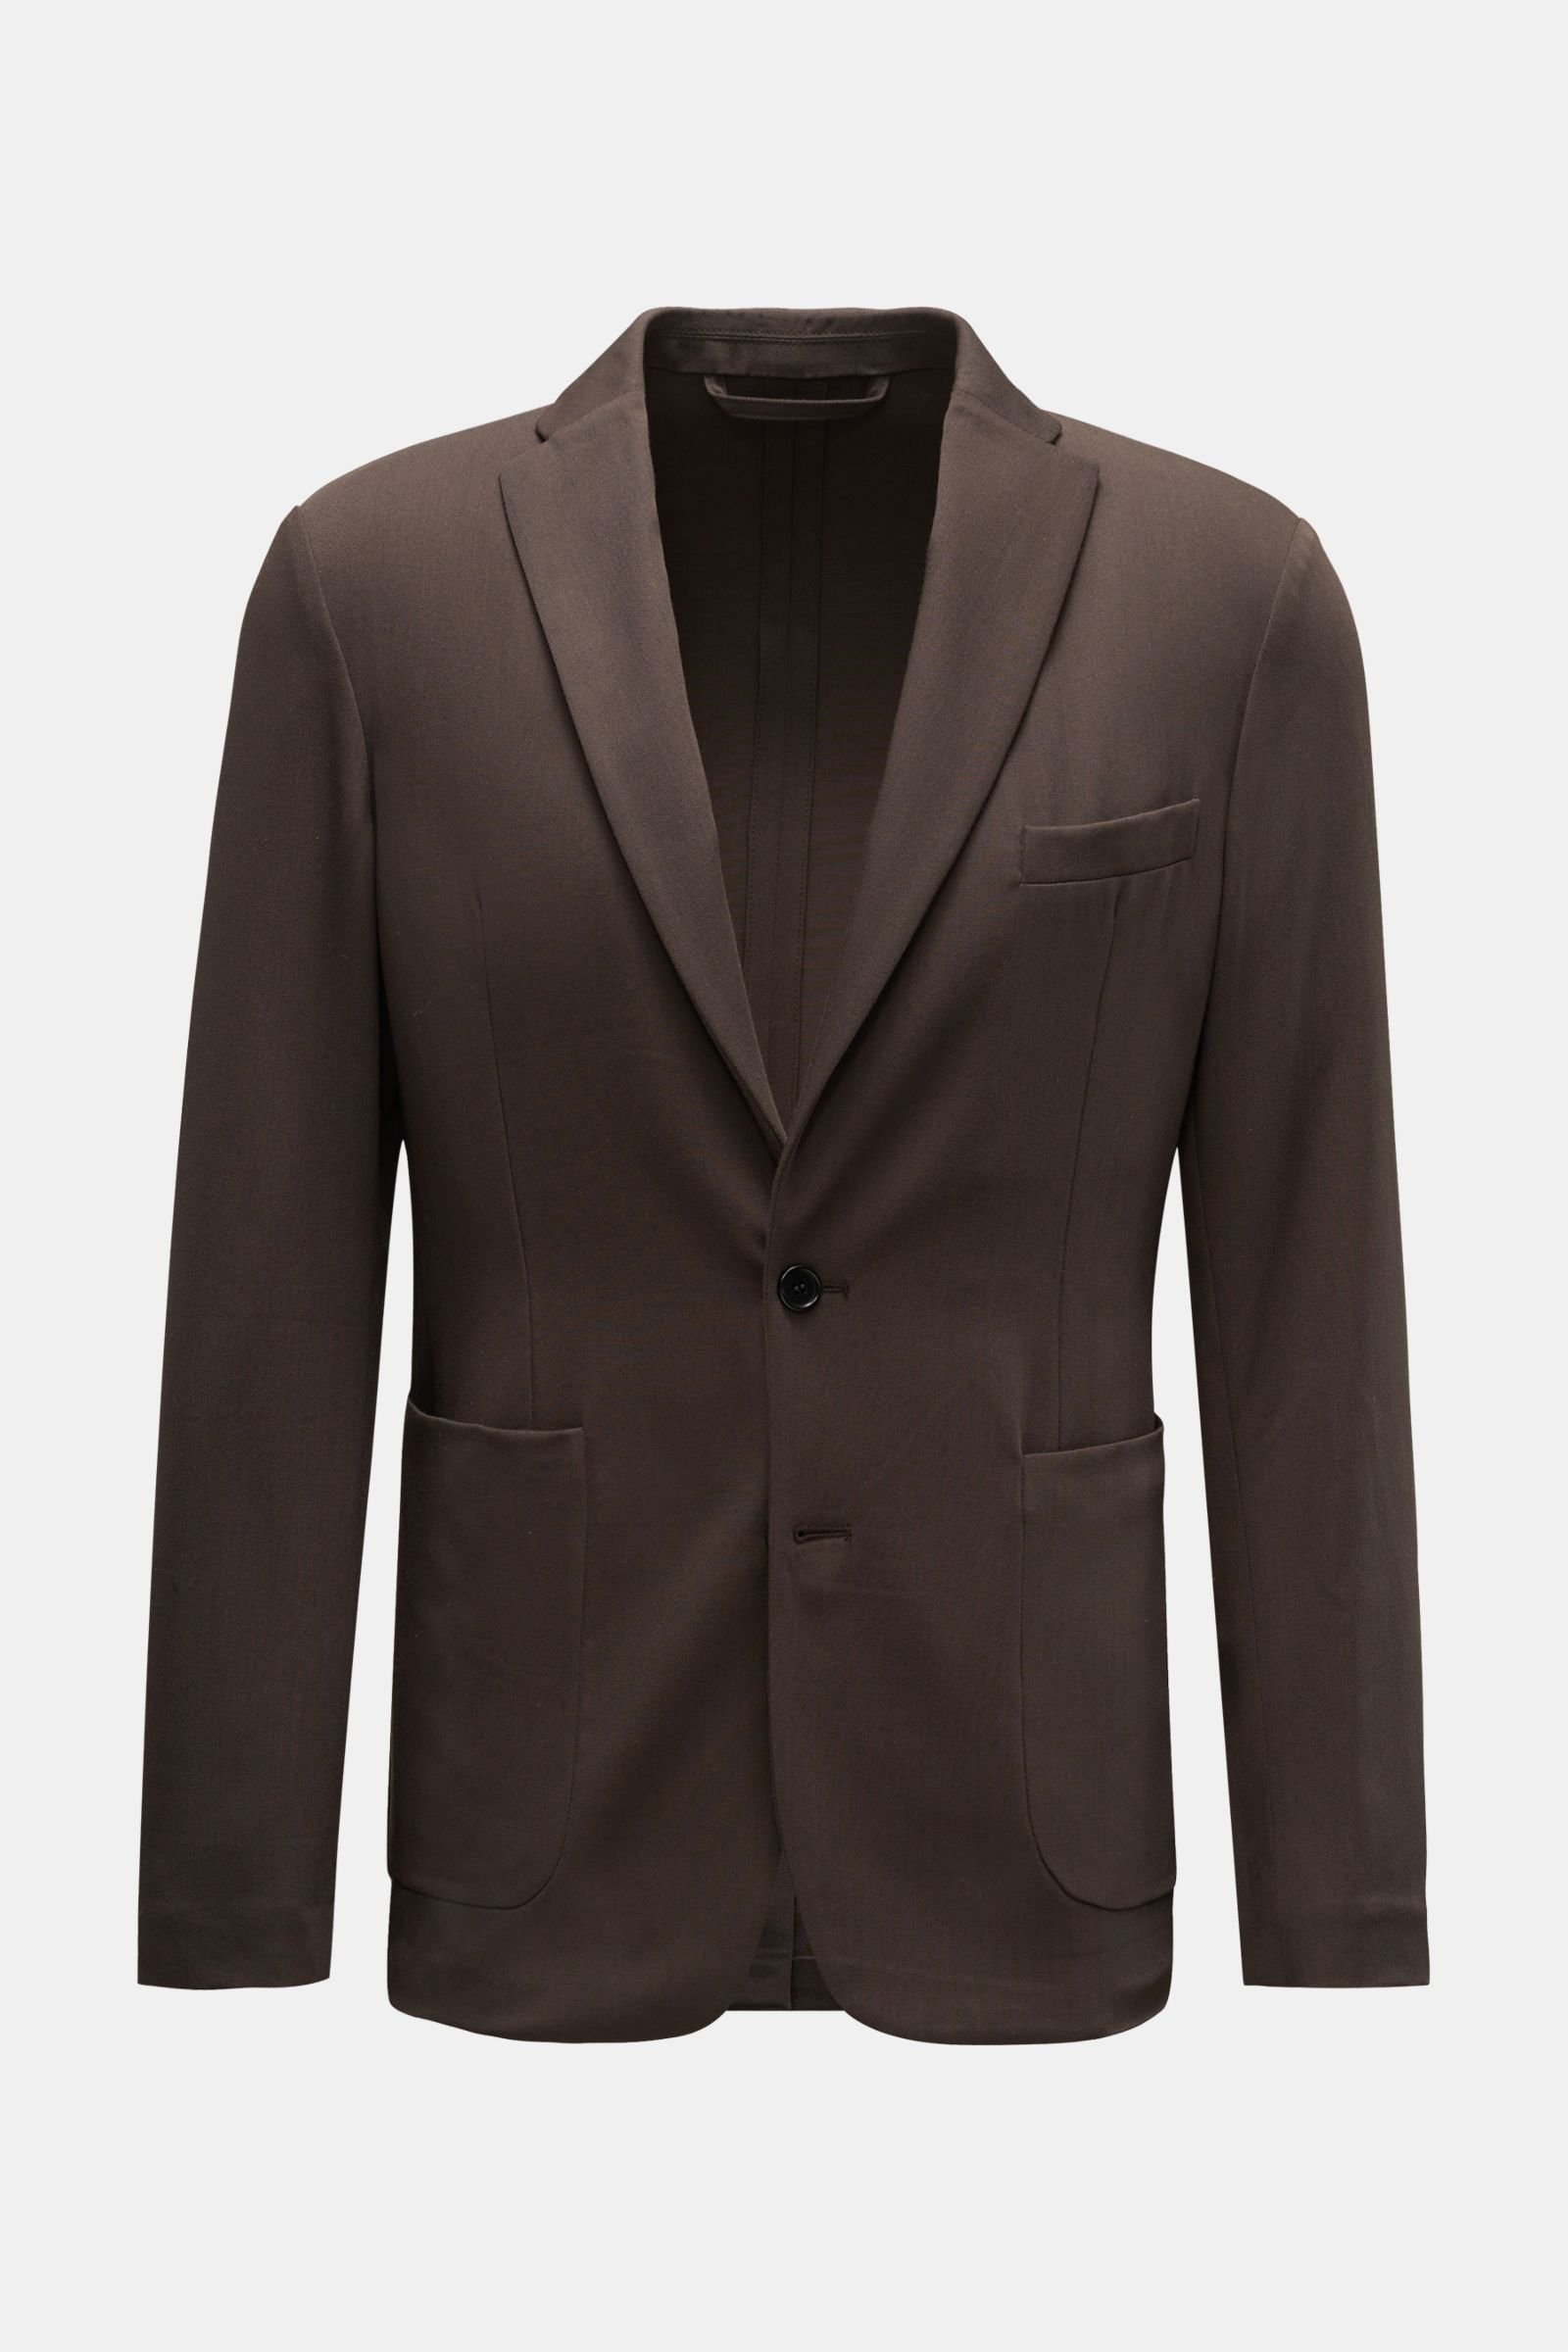 Smart-casual jacket 'Udo' dark brown